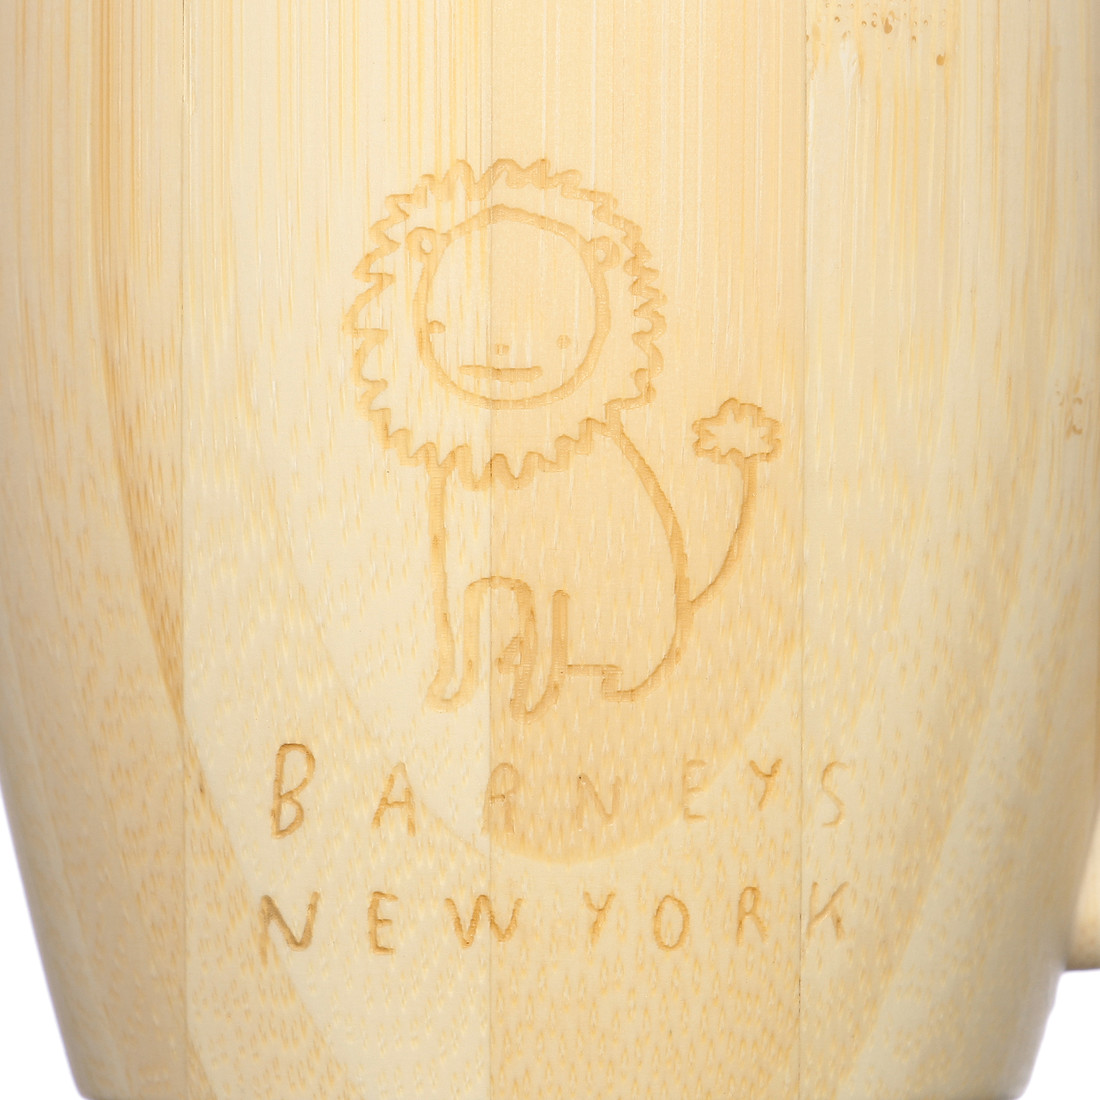 BARNEYS NEW YORK（バーニーズ ニューヨーク）ライオンバンブーマグカップ